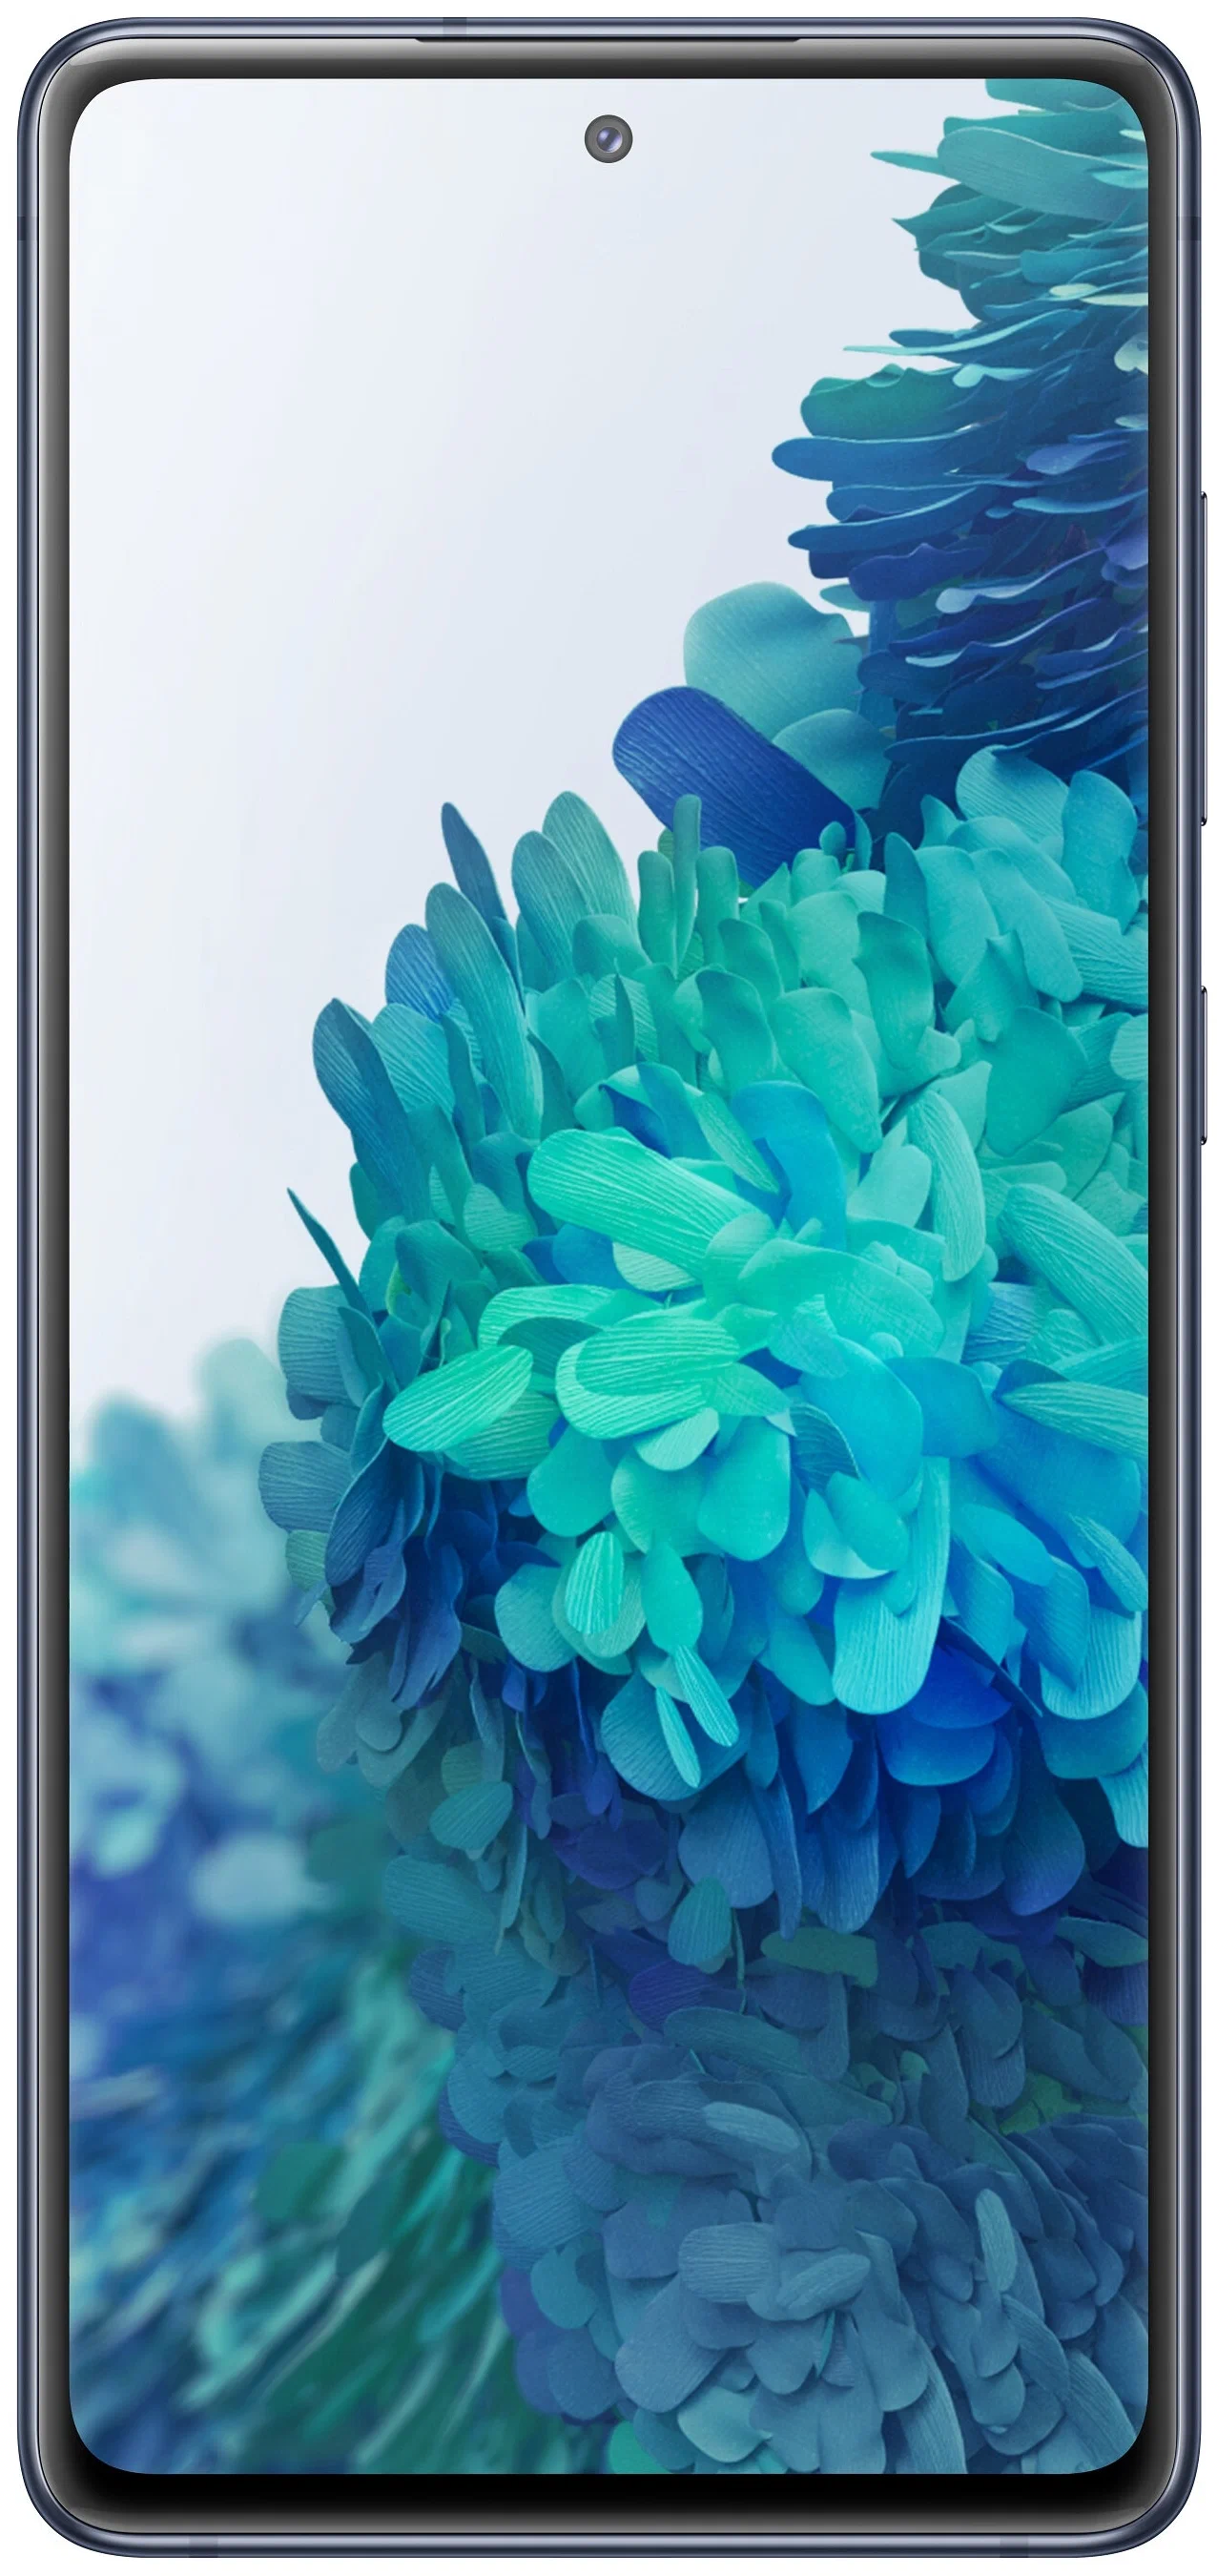 Samsung Galaxy S20 FE (SM-G780F) - встроенная память: 256 ГБ, 128 ГБ